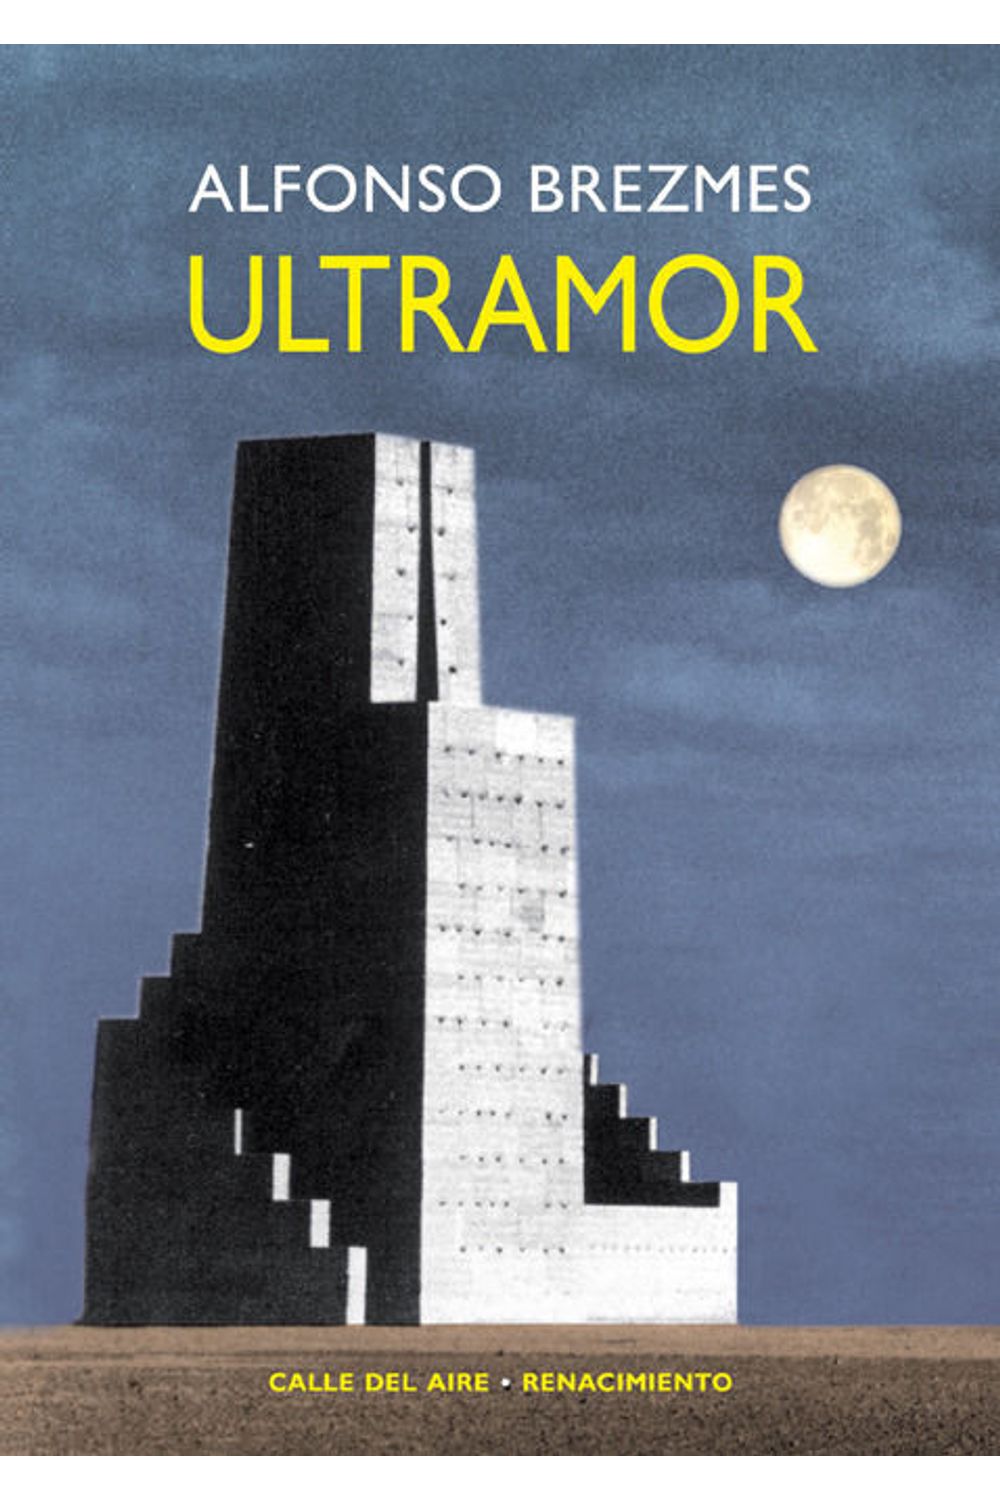 Ultramor